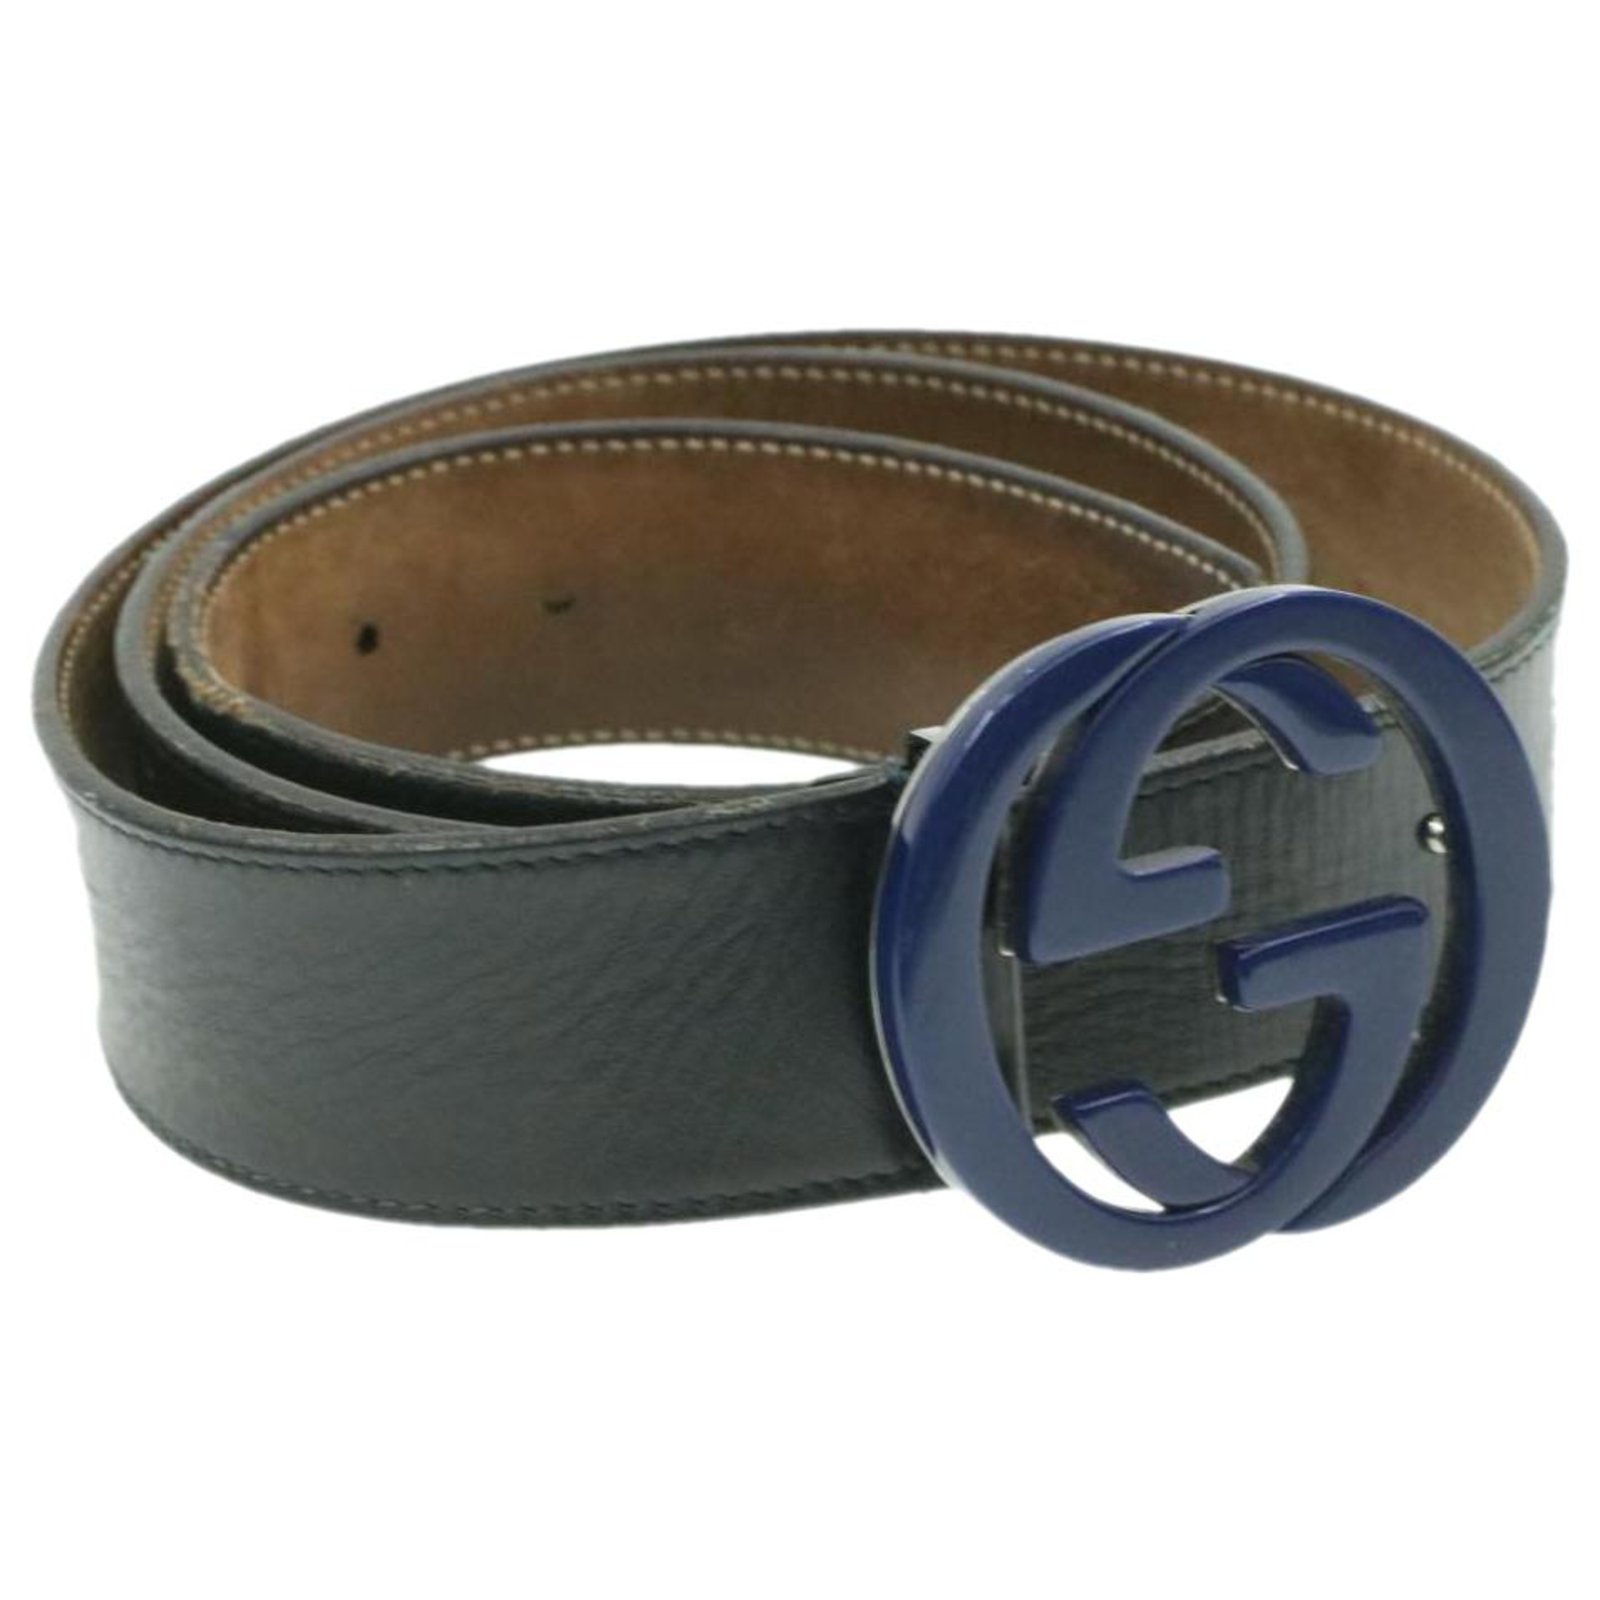 3.8 cm gucci belt